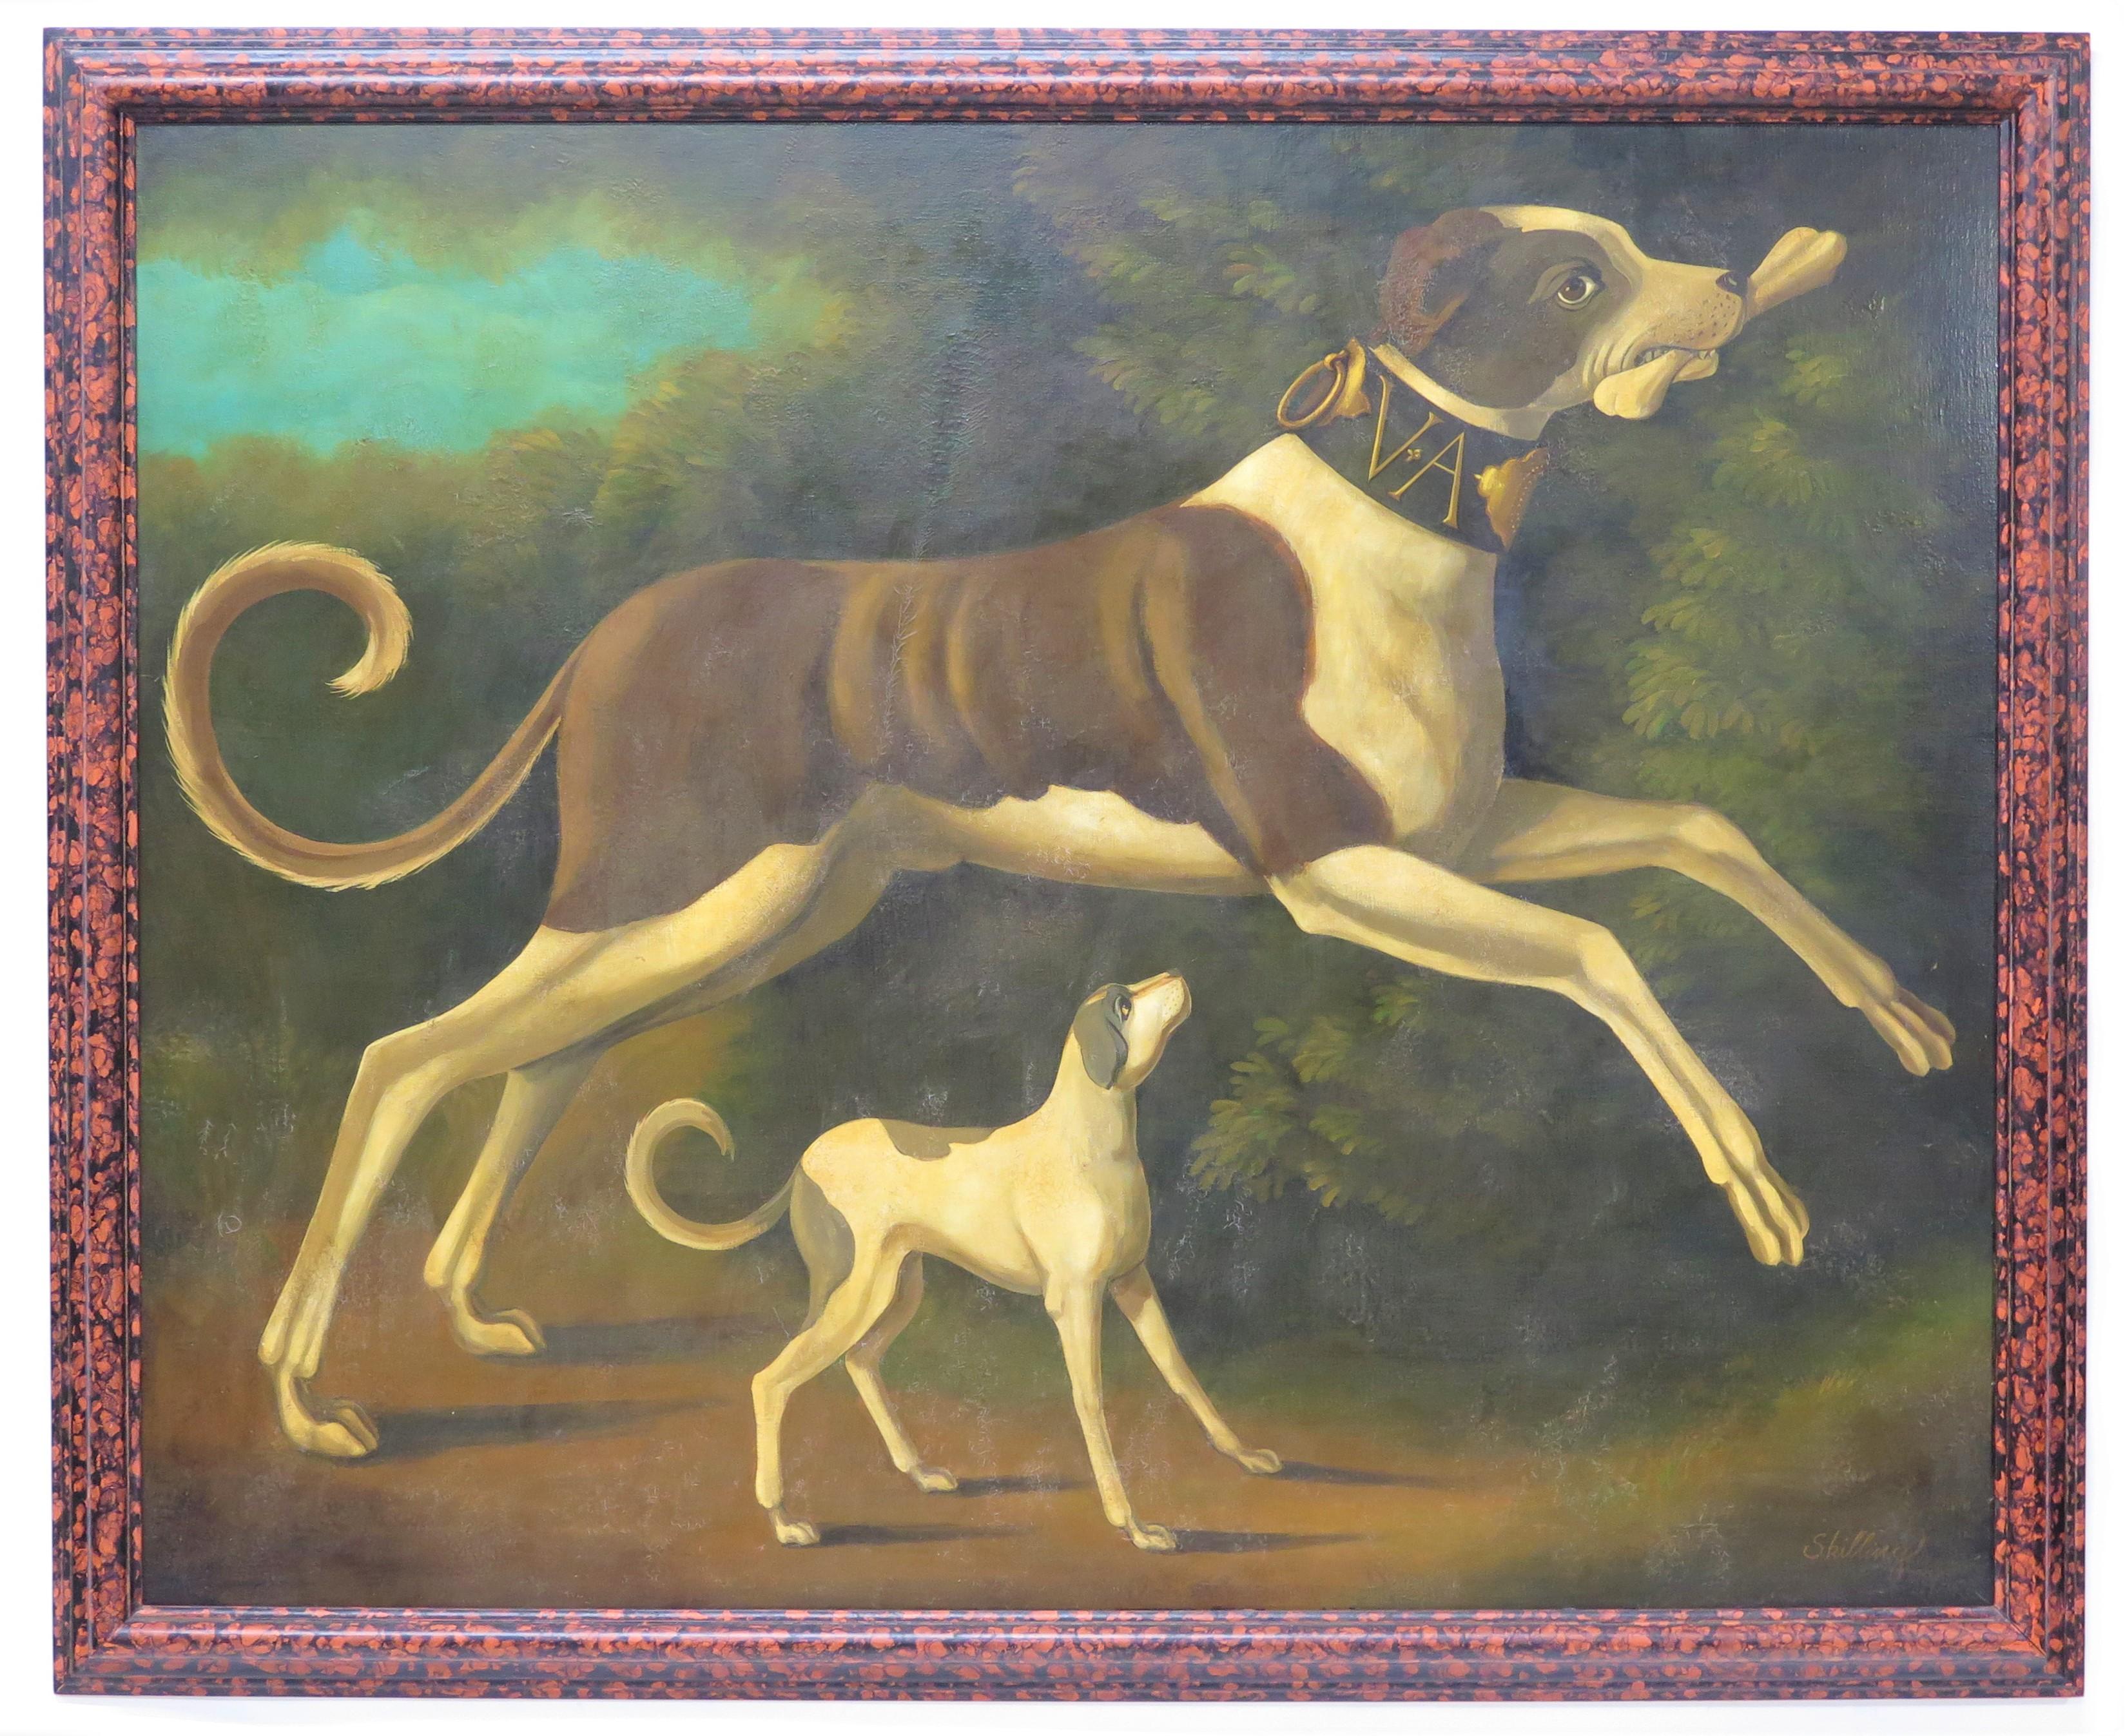 Ölgemälde auf Leinwand von zwei verspielten Hunden in der Mitte ausgelassen und ausgeführt in einem augenzwinkernden viktorianischen Wohnzimmer Malerei Stil mit künstlichen Alterung, distressed Finish, und ein faux Schildkröte Rahmen, signiert